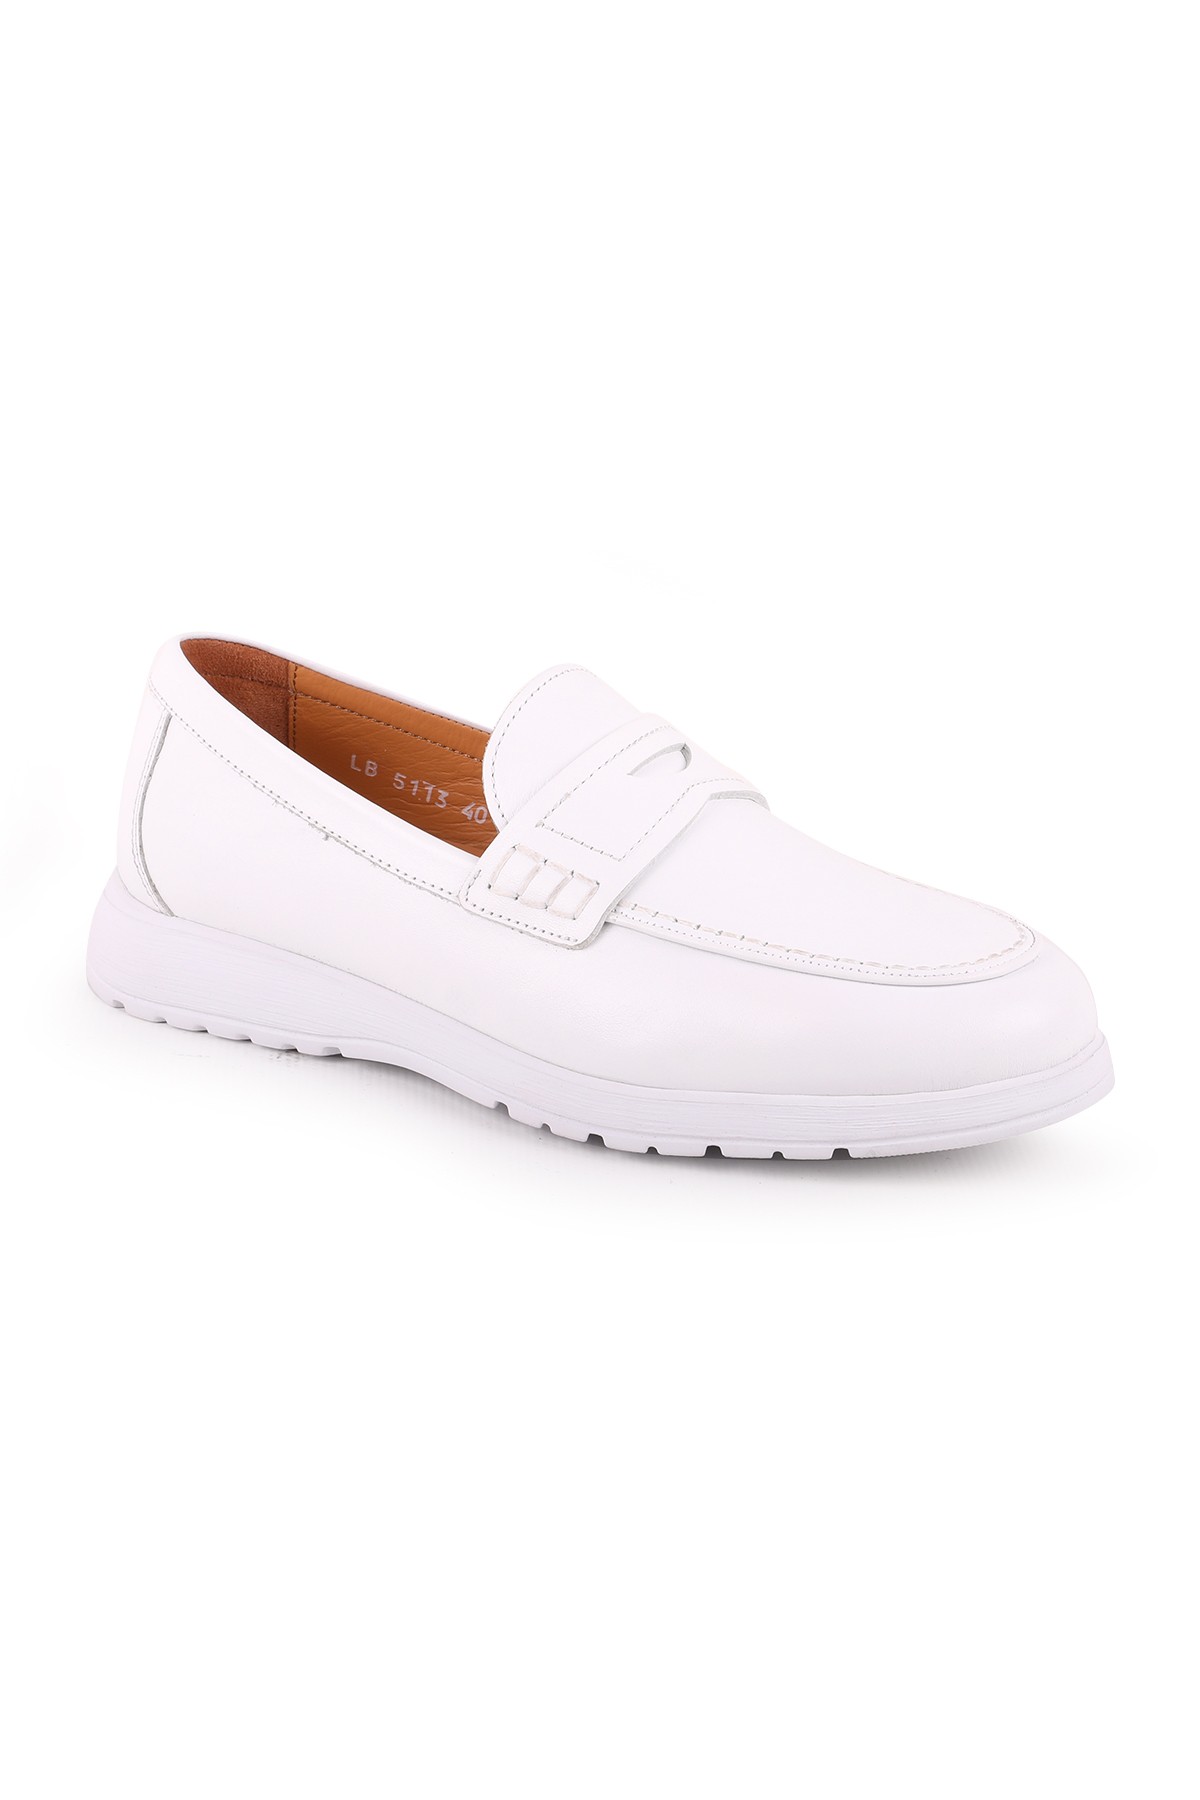 Libero L5113 Deri Erkek Casual Ayakkabı - Beyaz